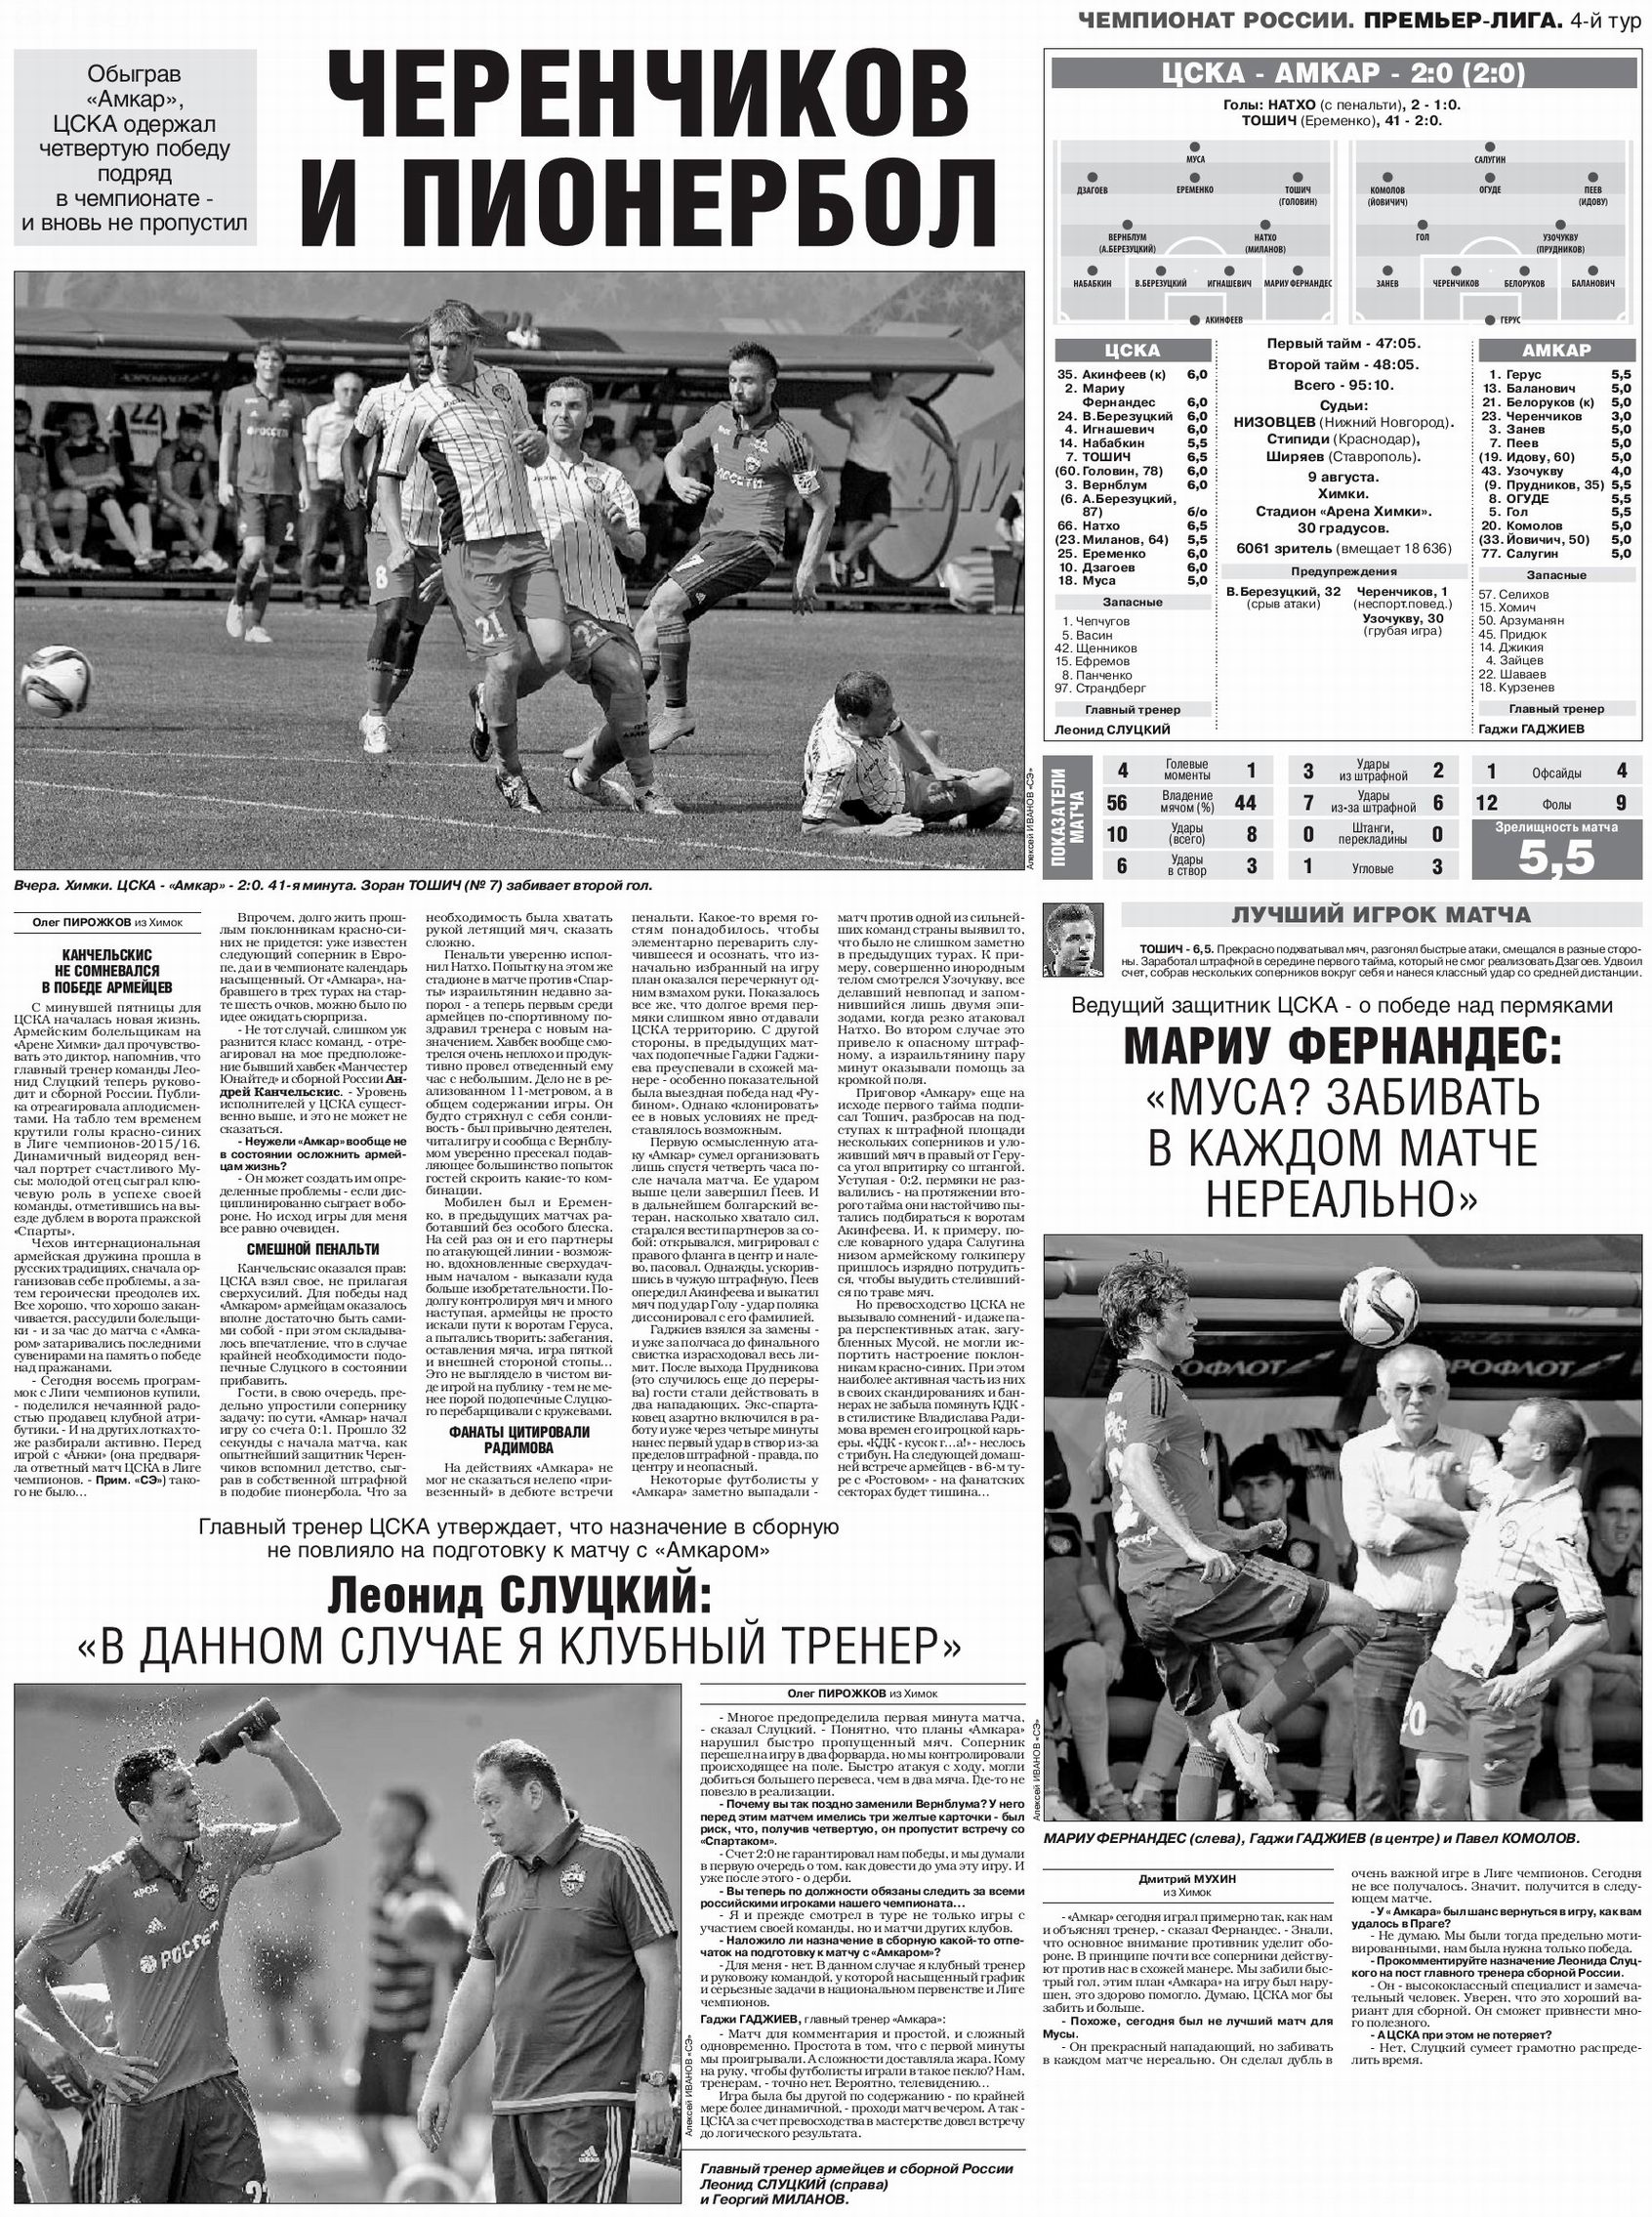 2015-08-09.CSKA-Amkar